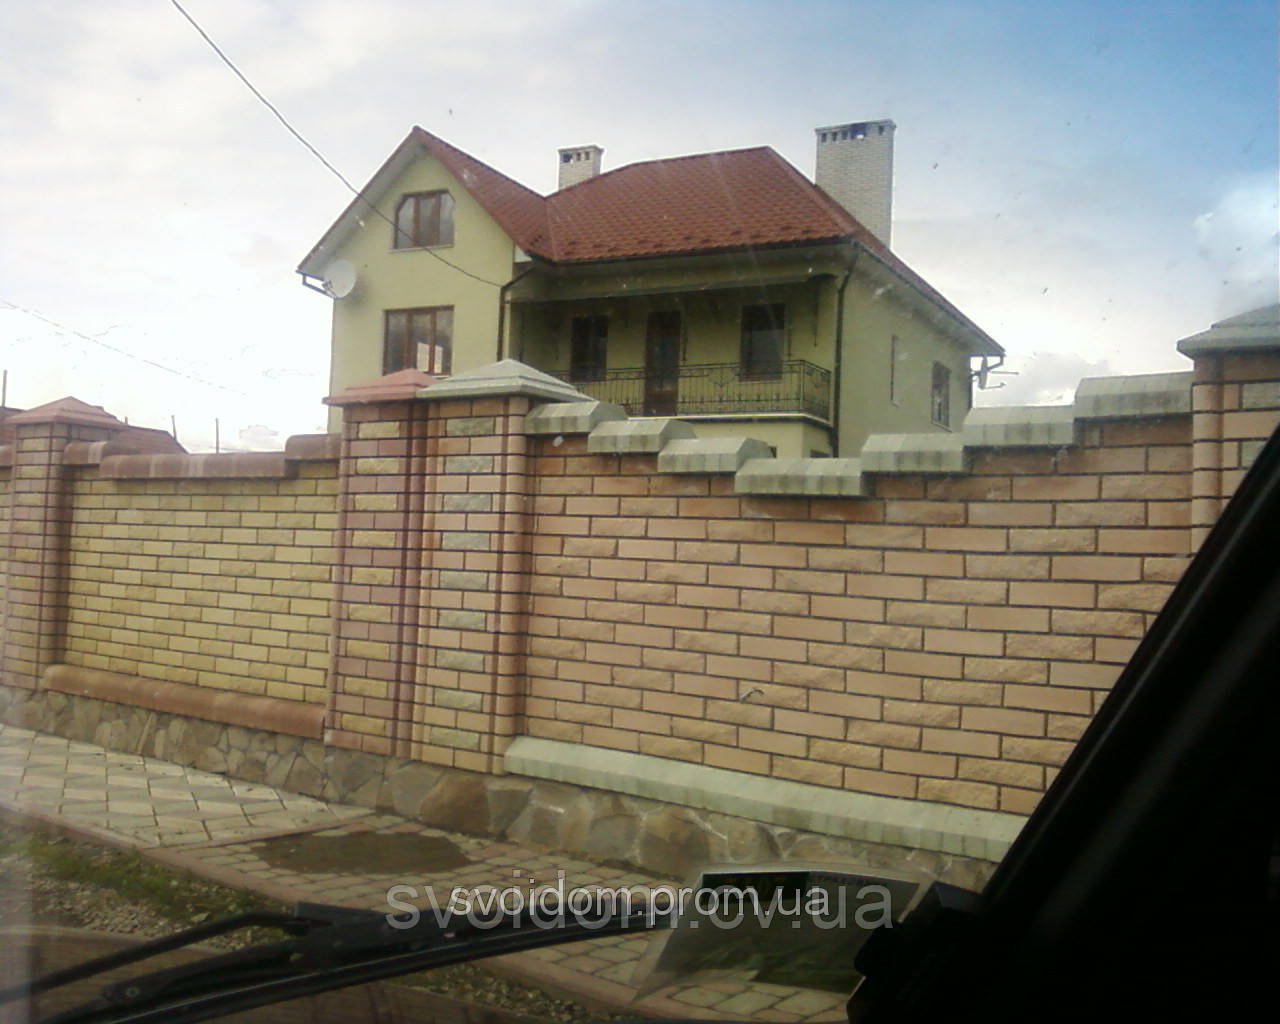 Строительство особняков и частных домов по Черновицкой области